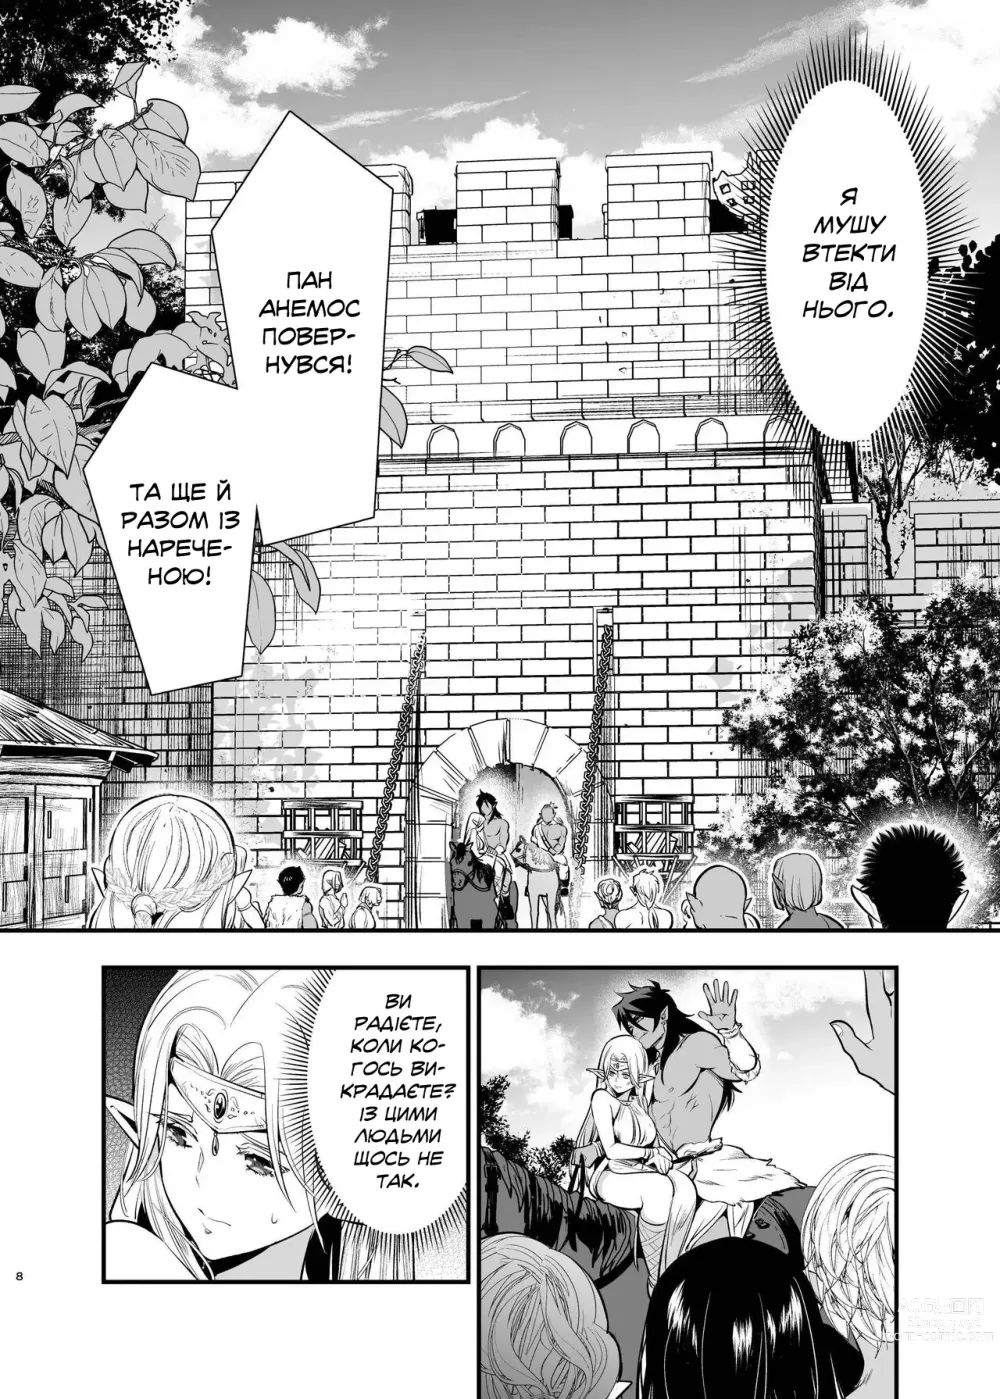 Page 6 of doujinshi Наречена орка. Історія про викрадену ельфійку, яка віддалася насолоді.